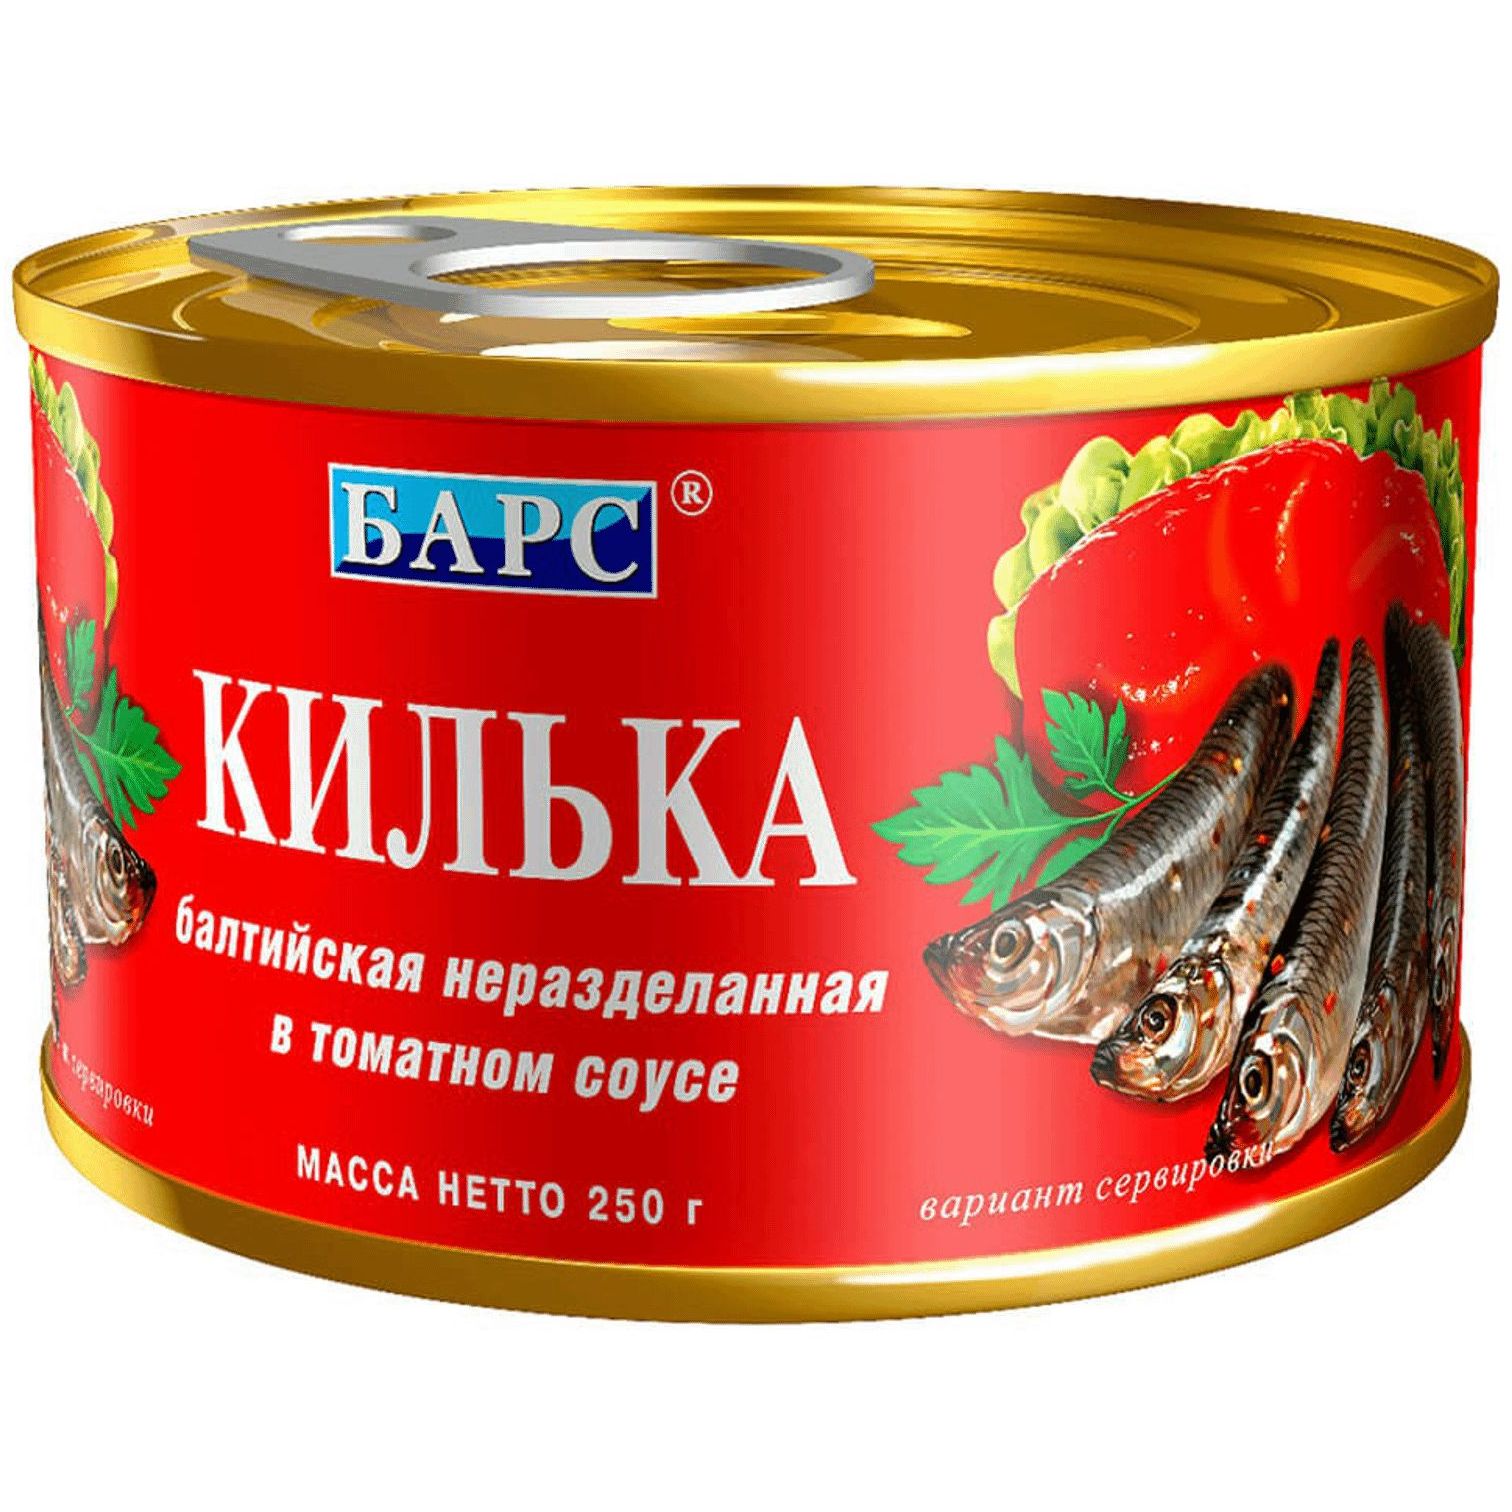 Килька Балтийская неразделанная в томатном соусе Барс 250г